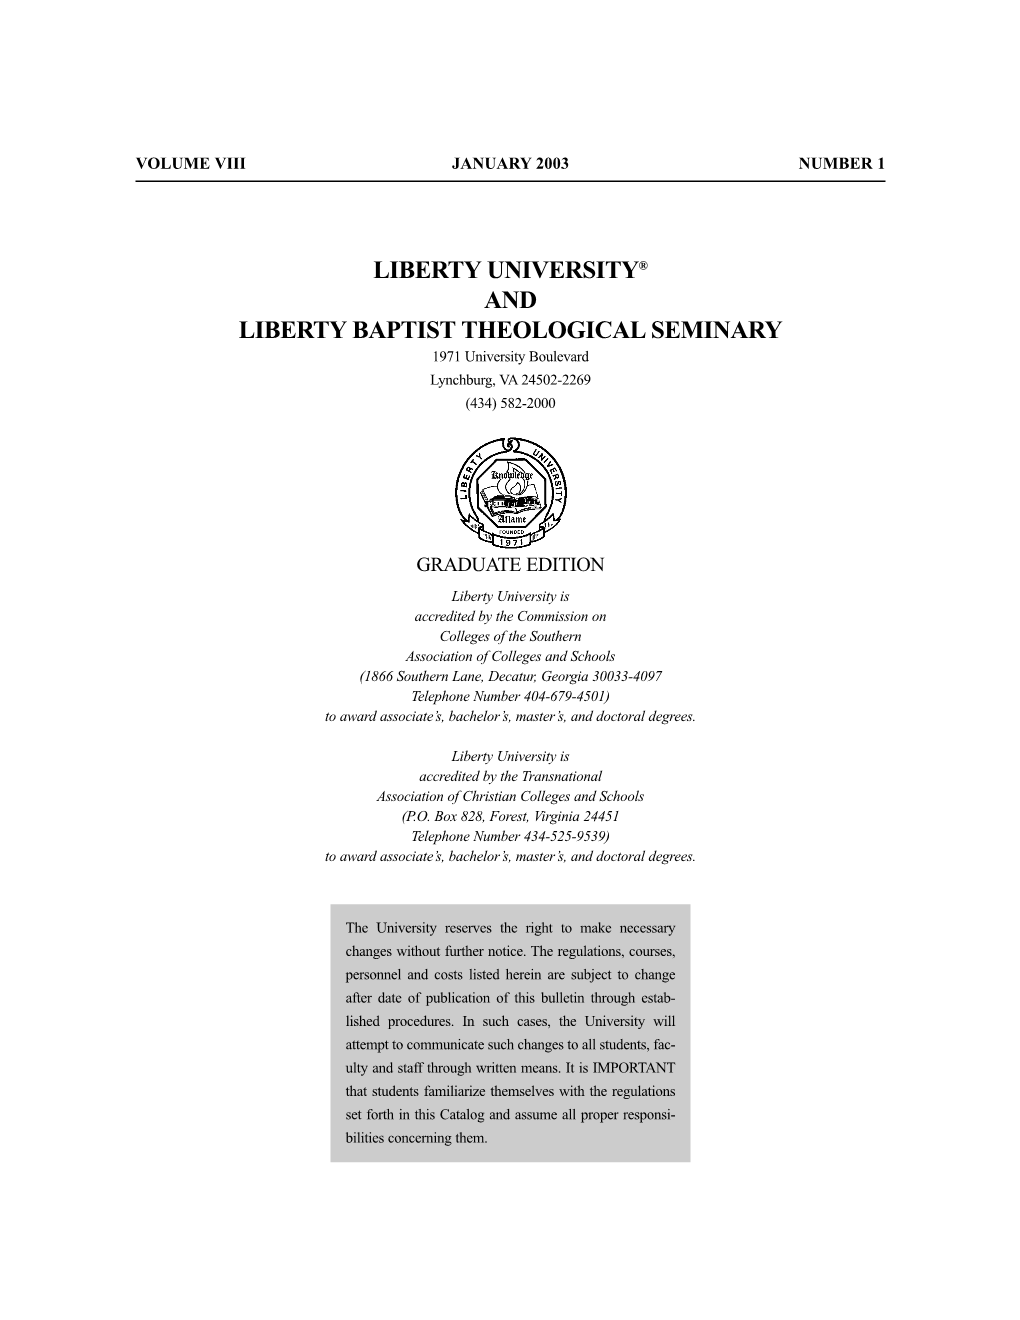 Liberty University® and Liberty